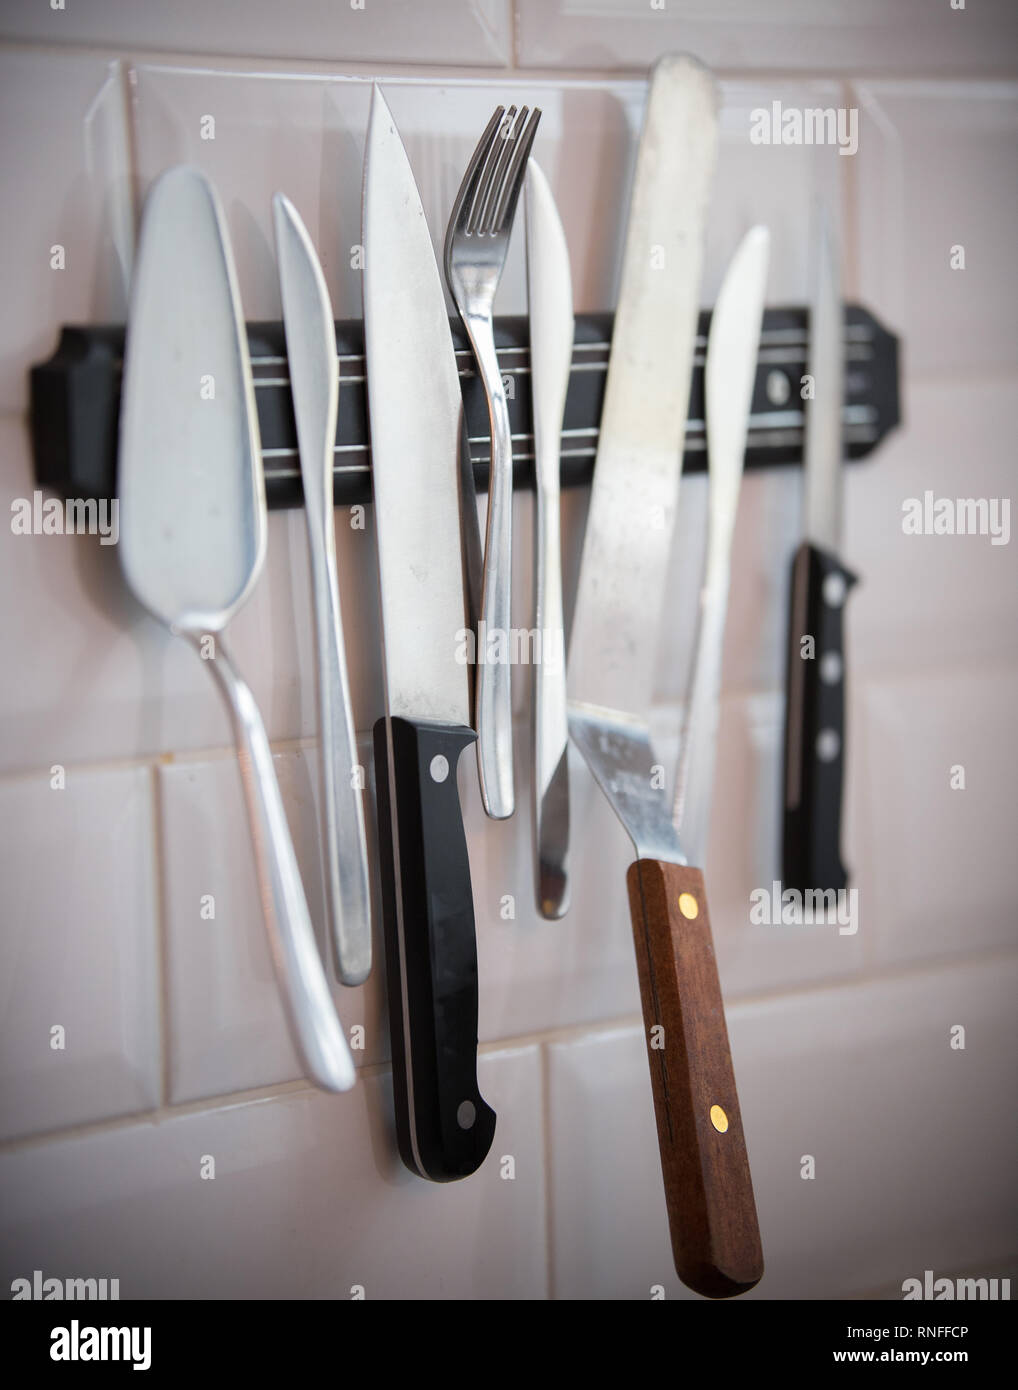 Coutellerie de cuisine accroché sur la bande magnétique sur le mur. Couteaux, fourchettes Banque D'Images